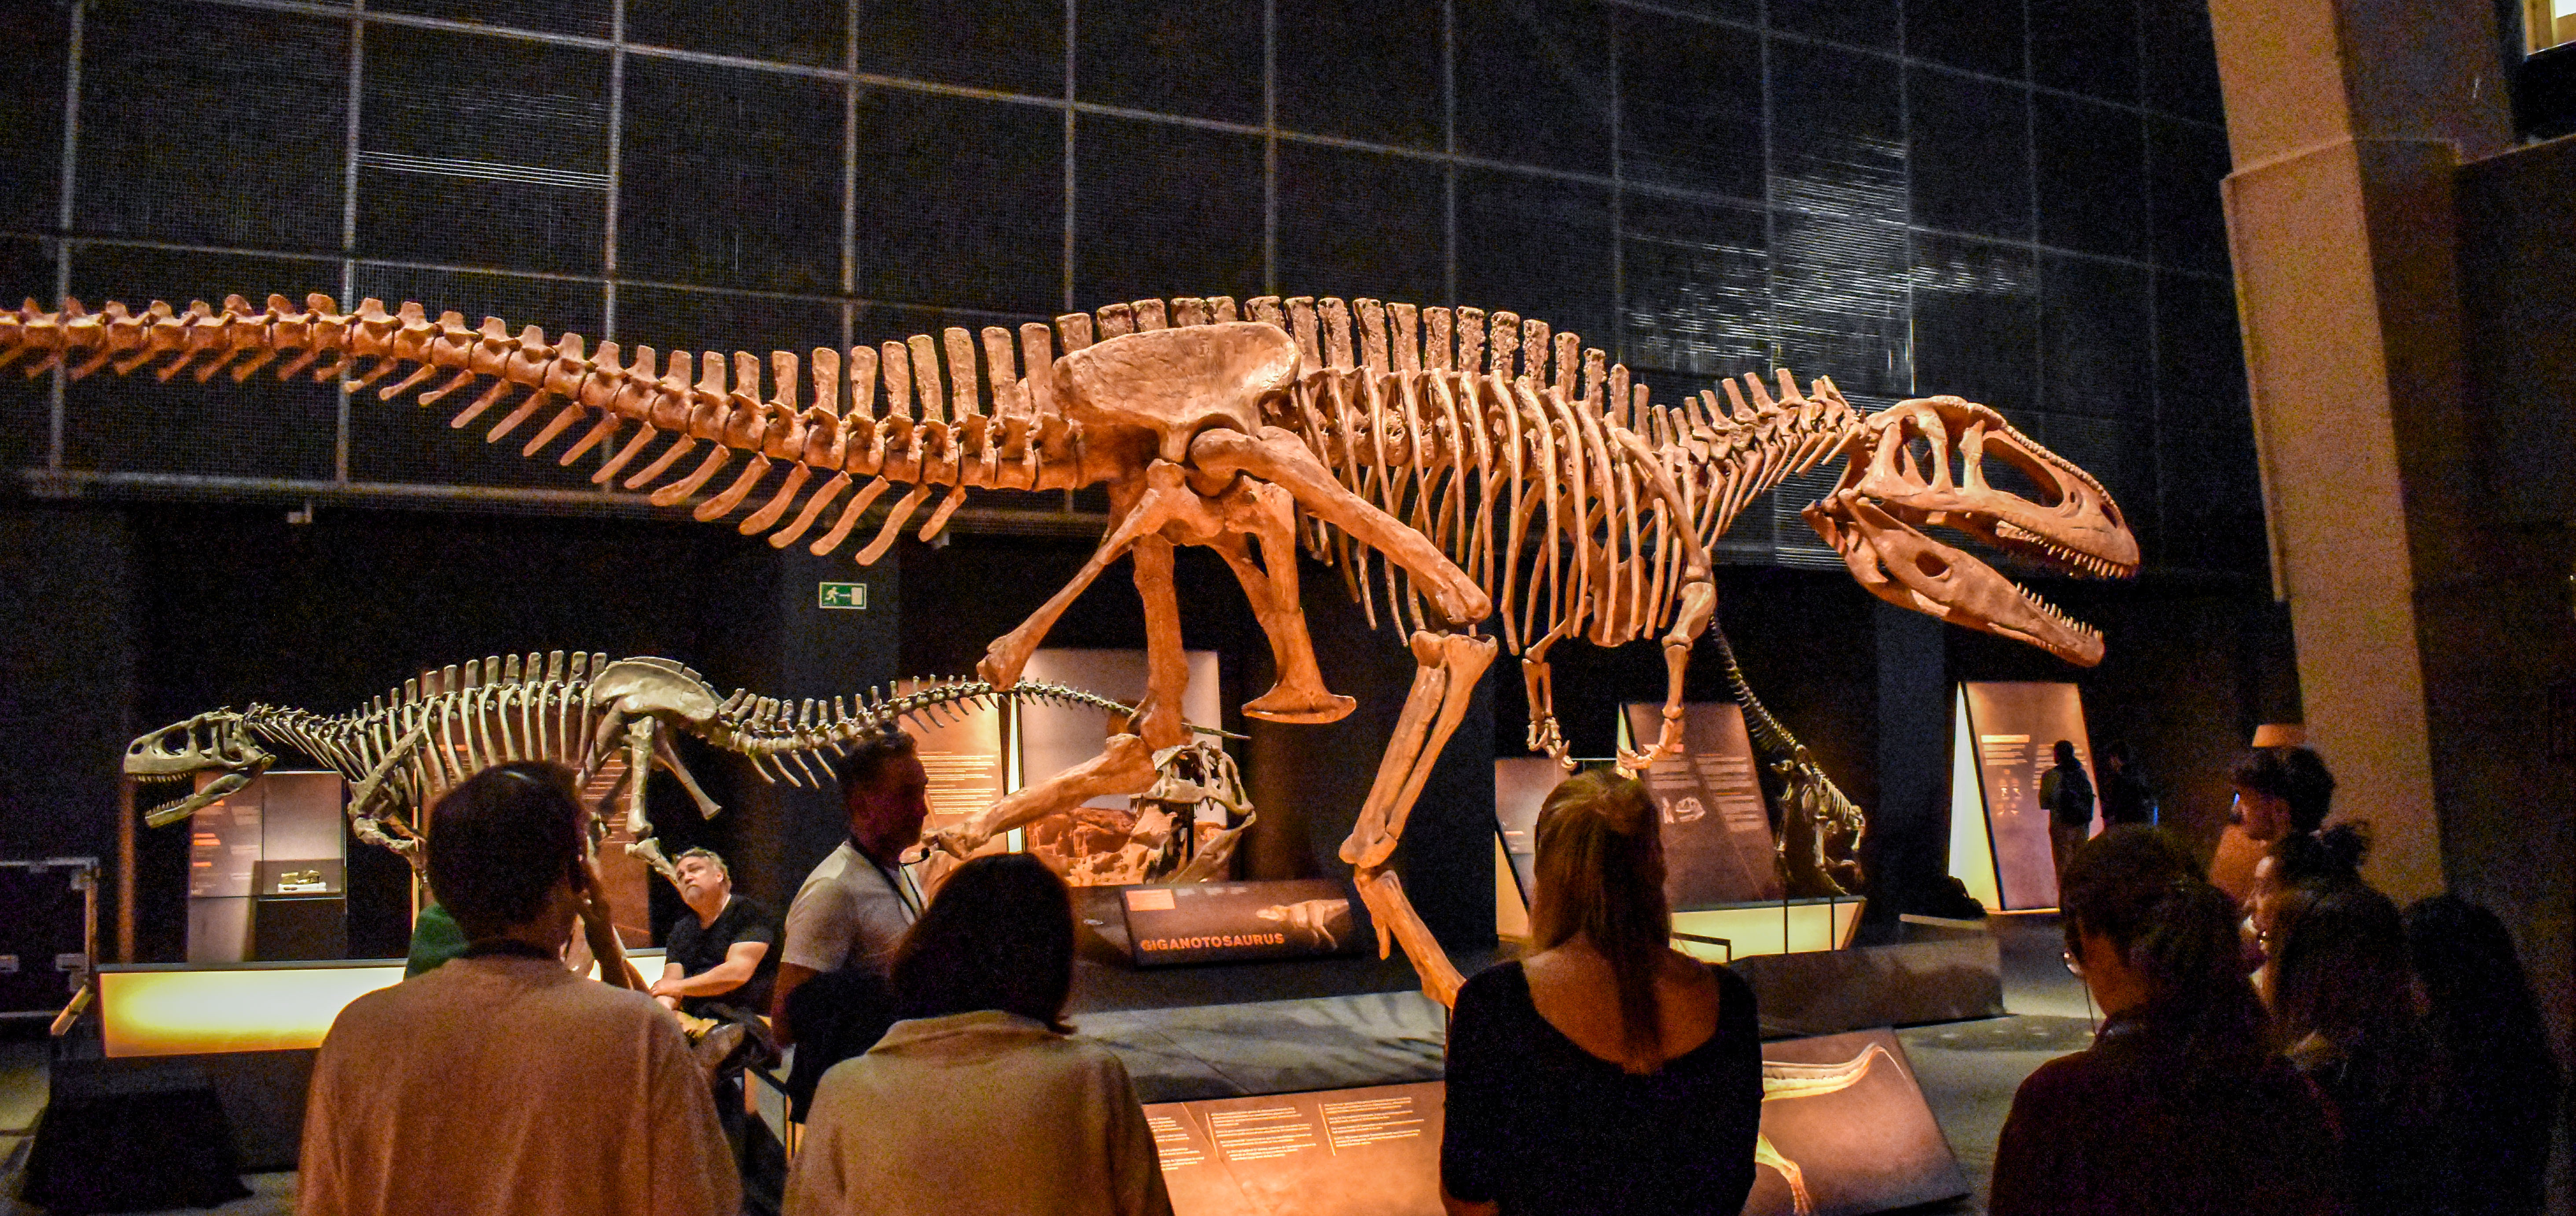 Visitantes contemplando un esqueleto de dinosaurio perteneciente a la exposición.